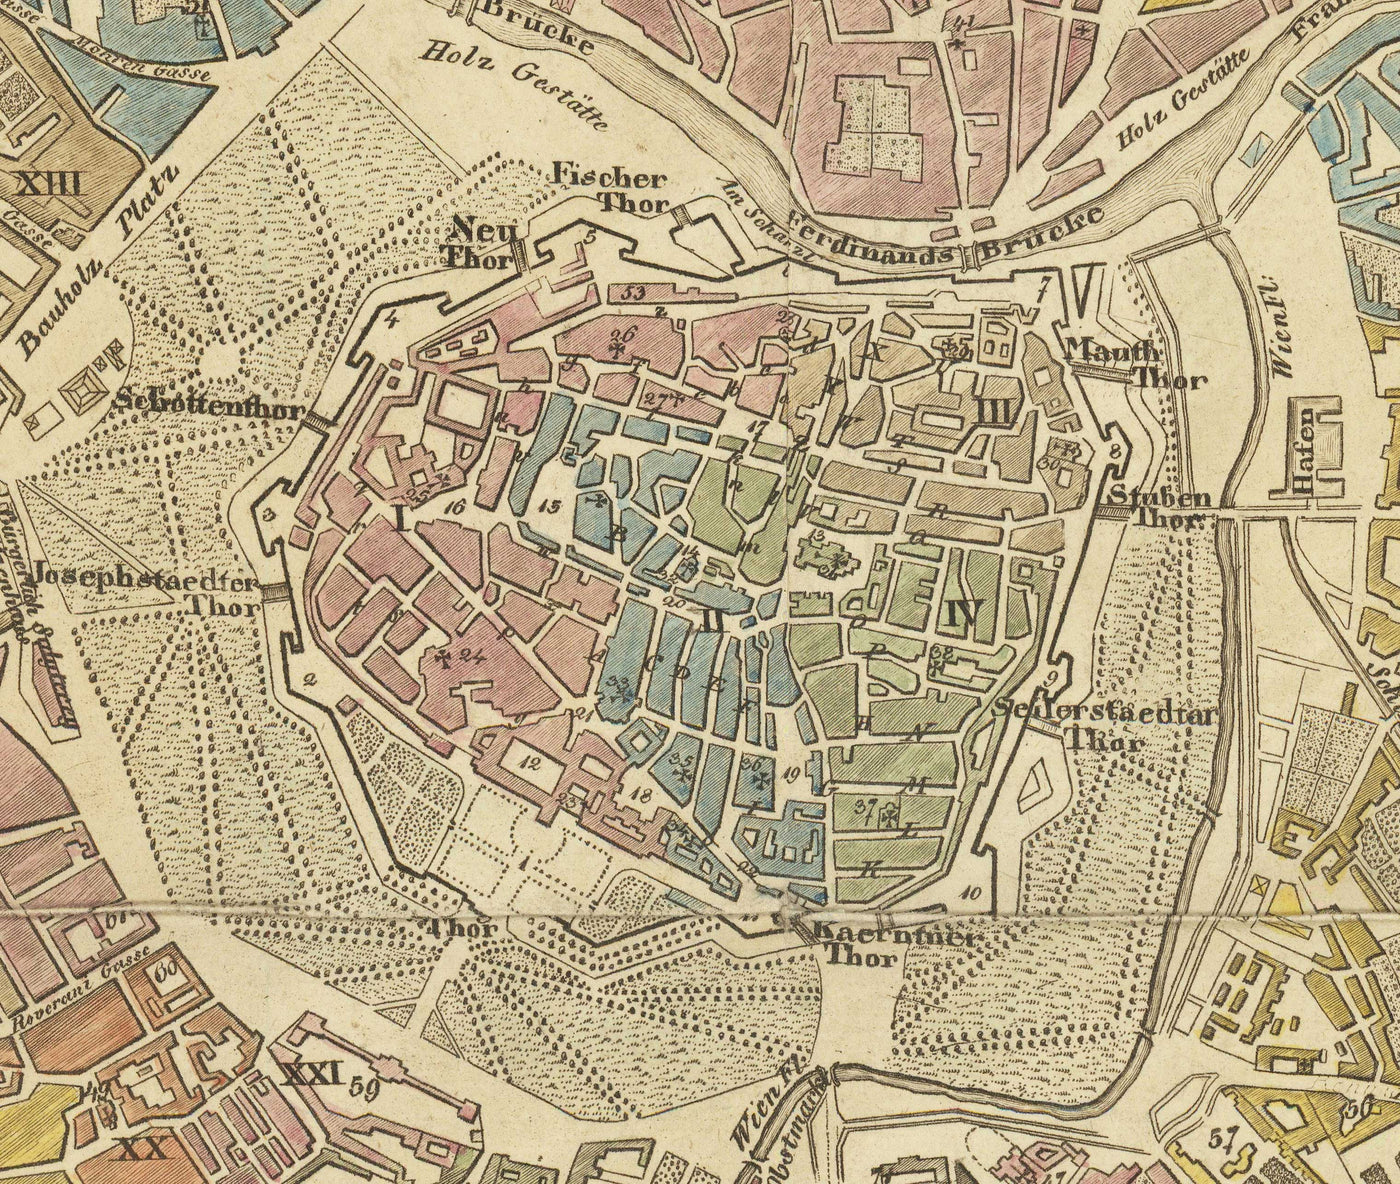 Old Map of Vienna by Tranquillo Mollo in 1803 - Augarten, Praterstern, Franzensbrucke, Burggarten, City Park